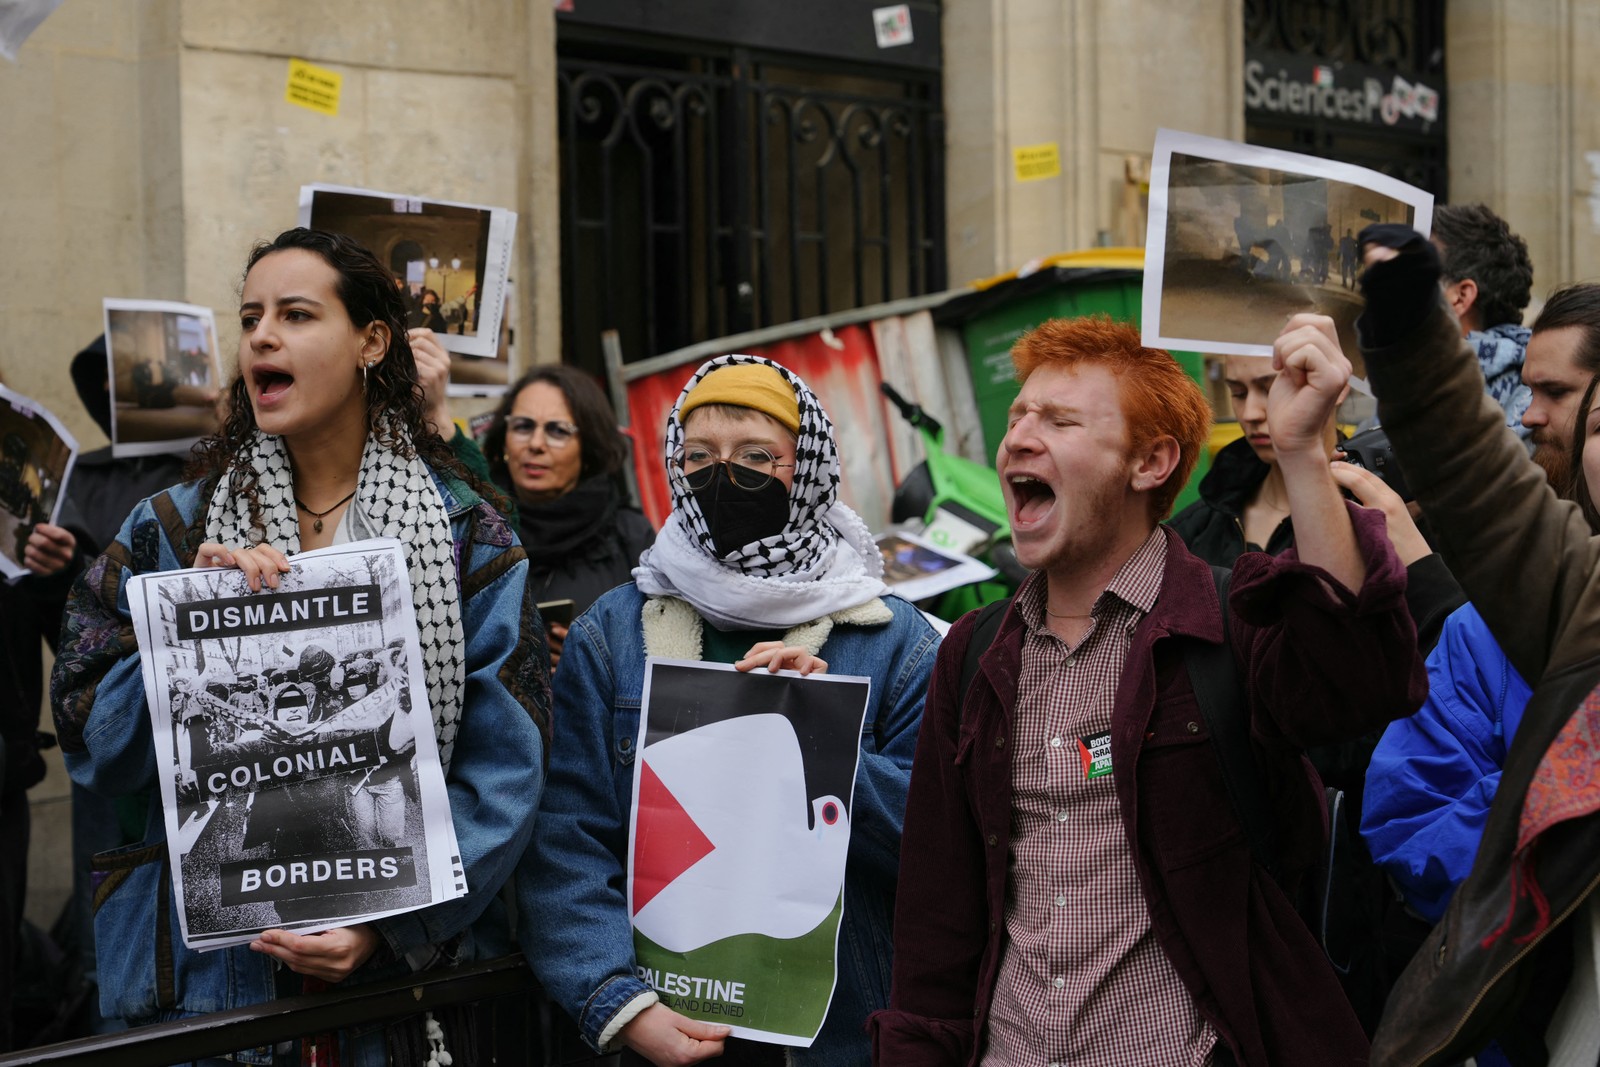 Manifestantes seguram cartazes com os dizeres "desmantelar fronteiras coloniais" enquanto estudantes ocupam um prédio do Instituto de Estudos Políticos em apoio aos palestinos, em Paris. — Foto: DIMITAR DILKOFF/AFP